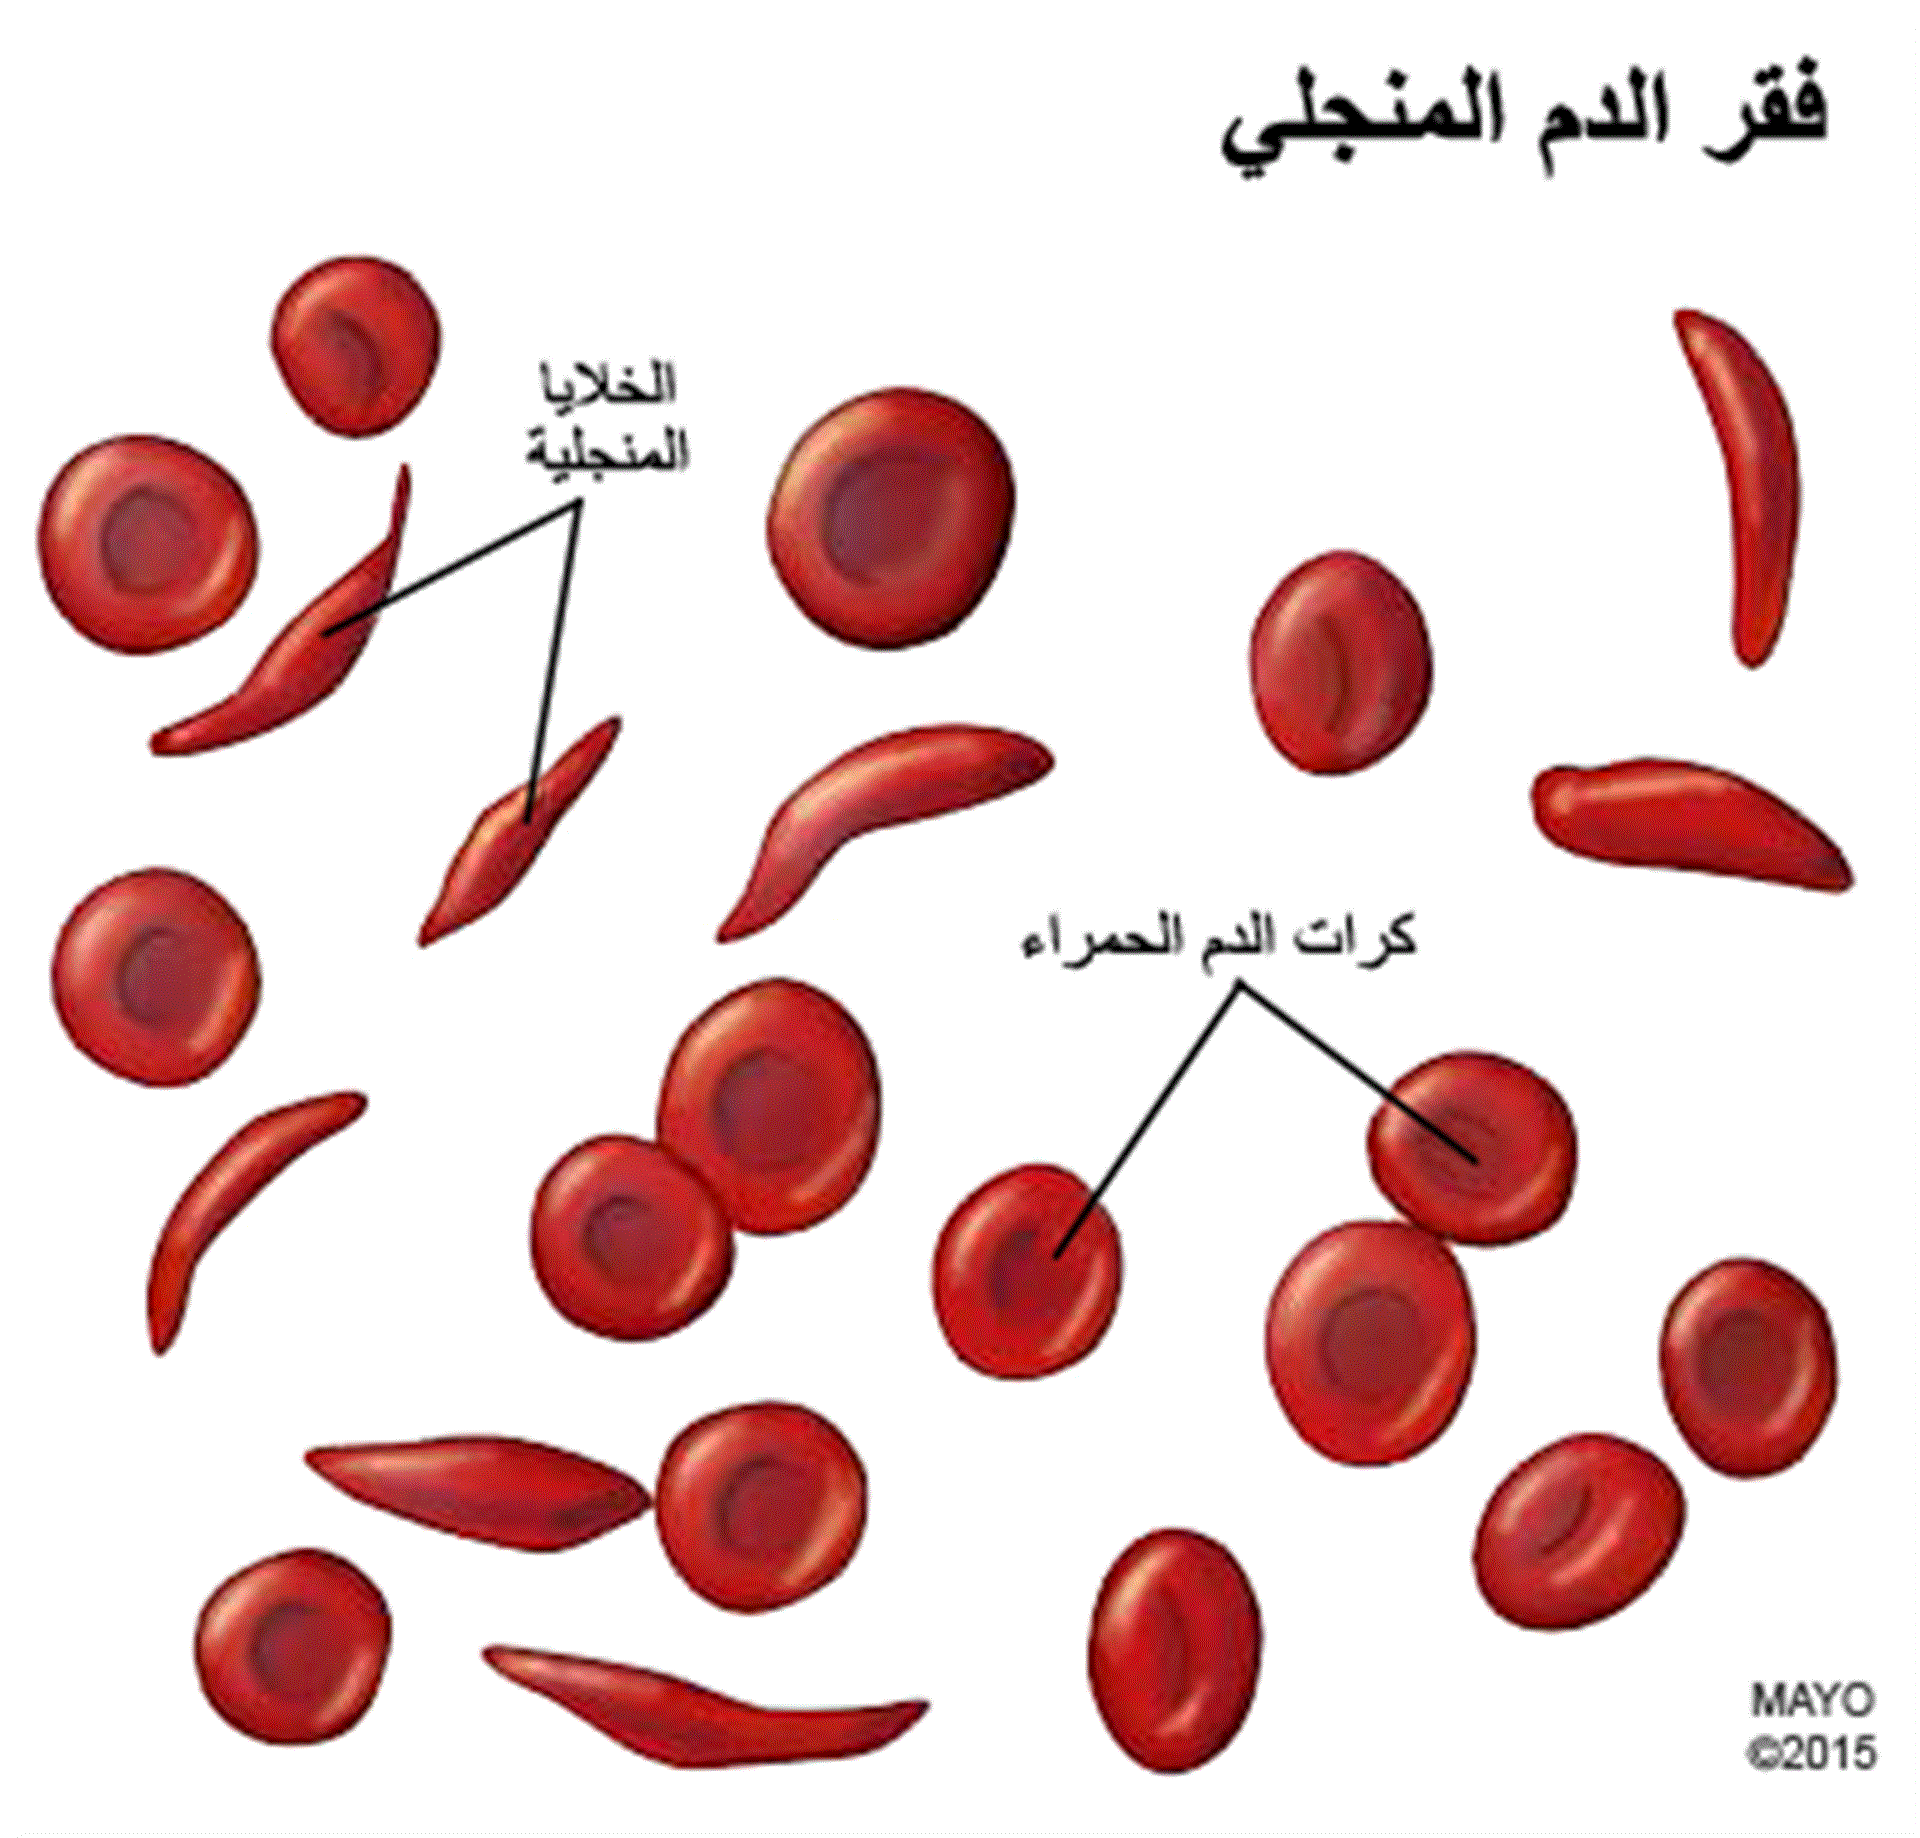 مرض فقر الدم المنجلي أعراضه ومضاعفاته